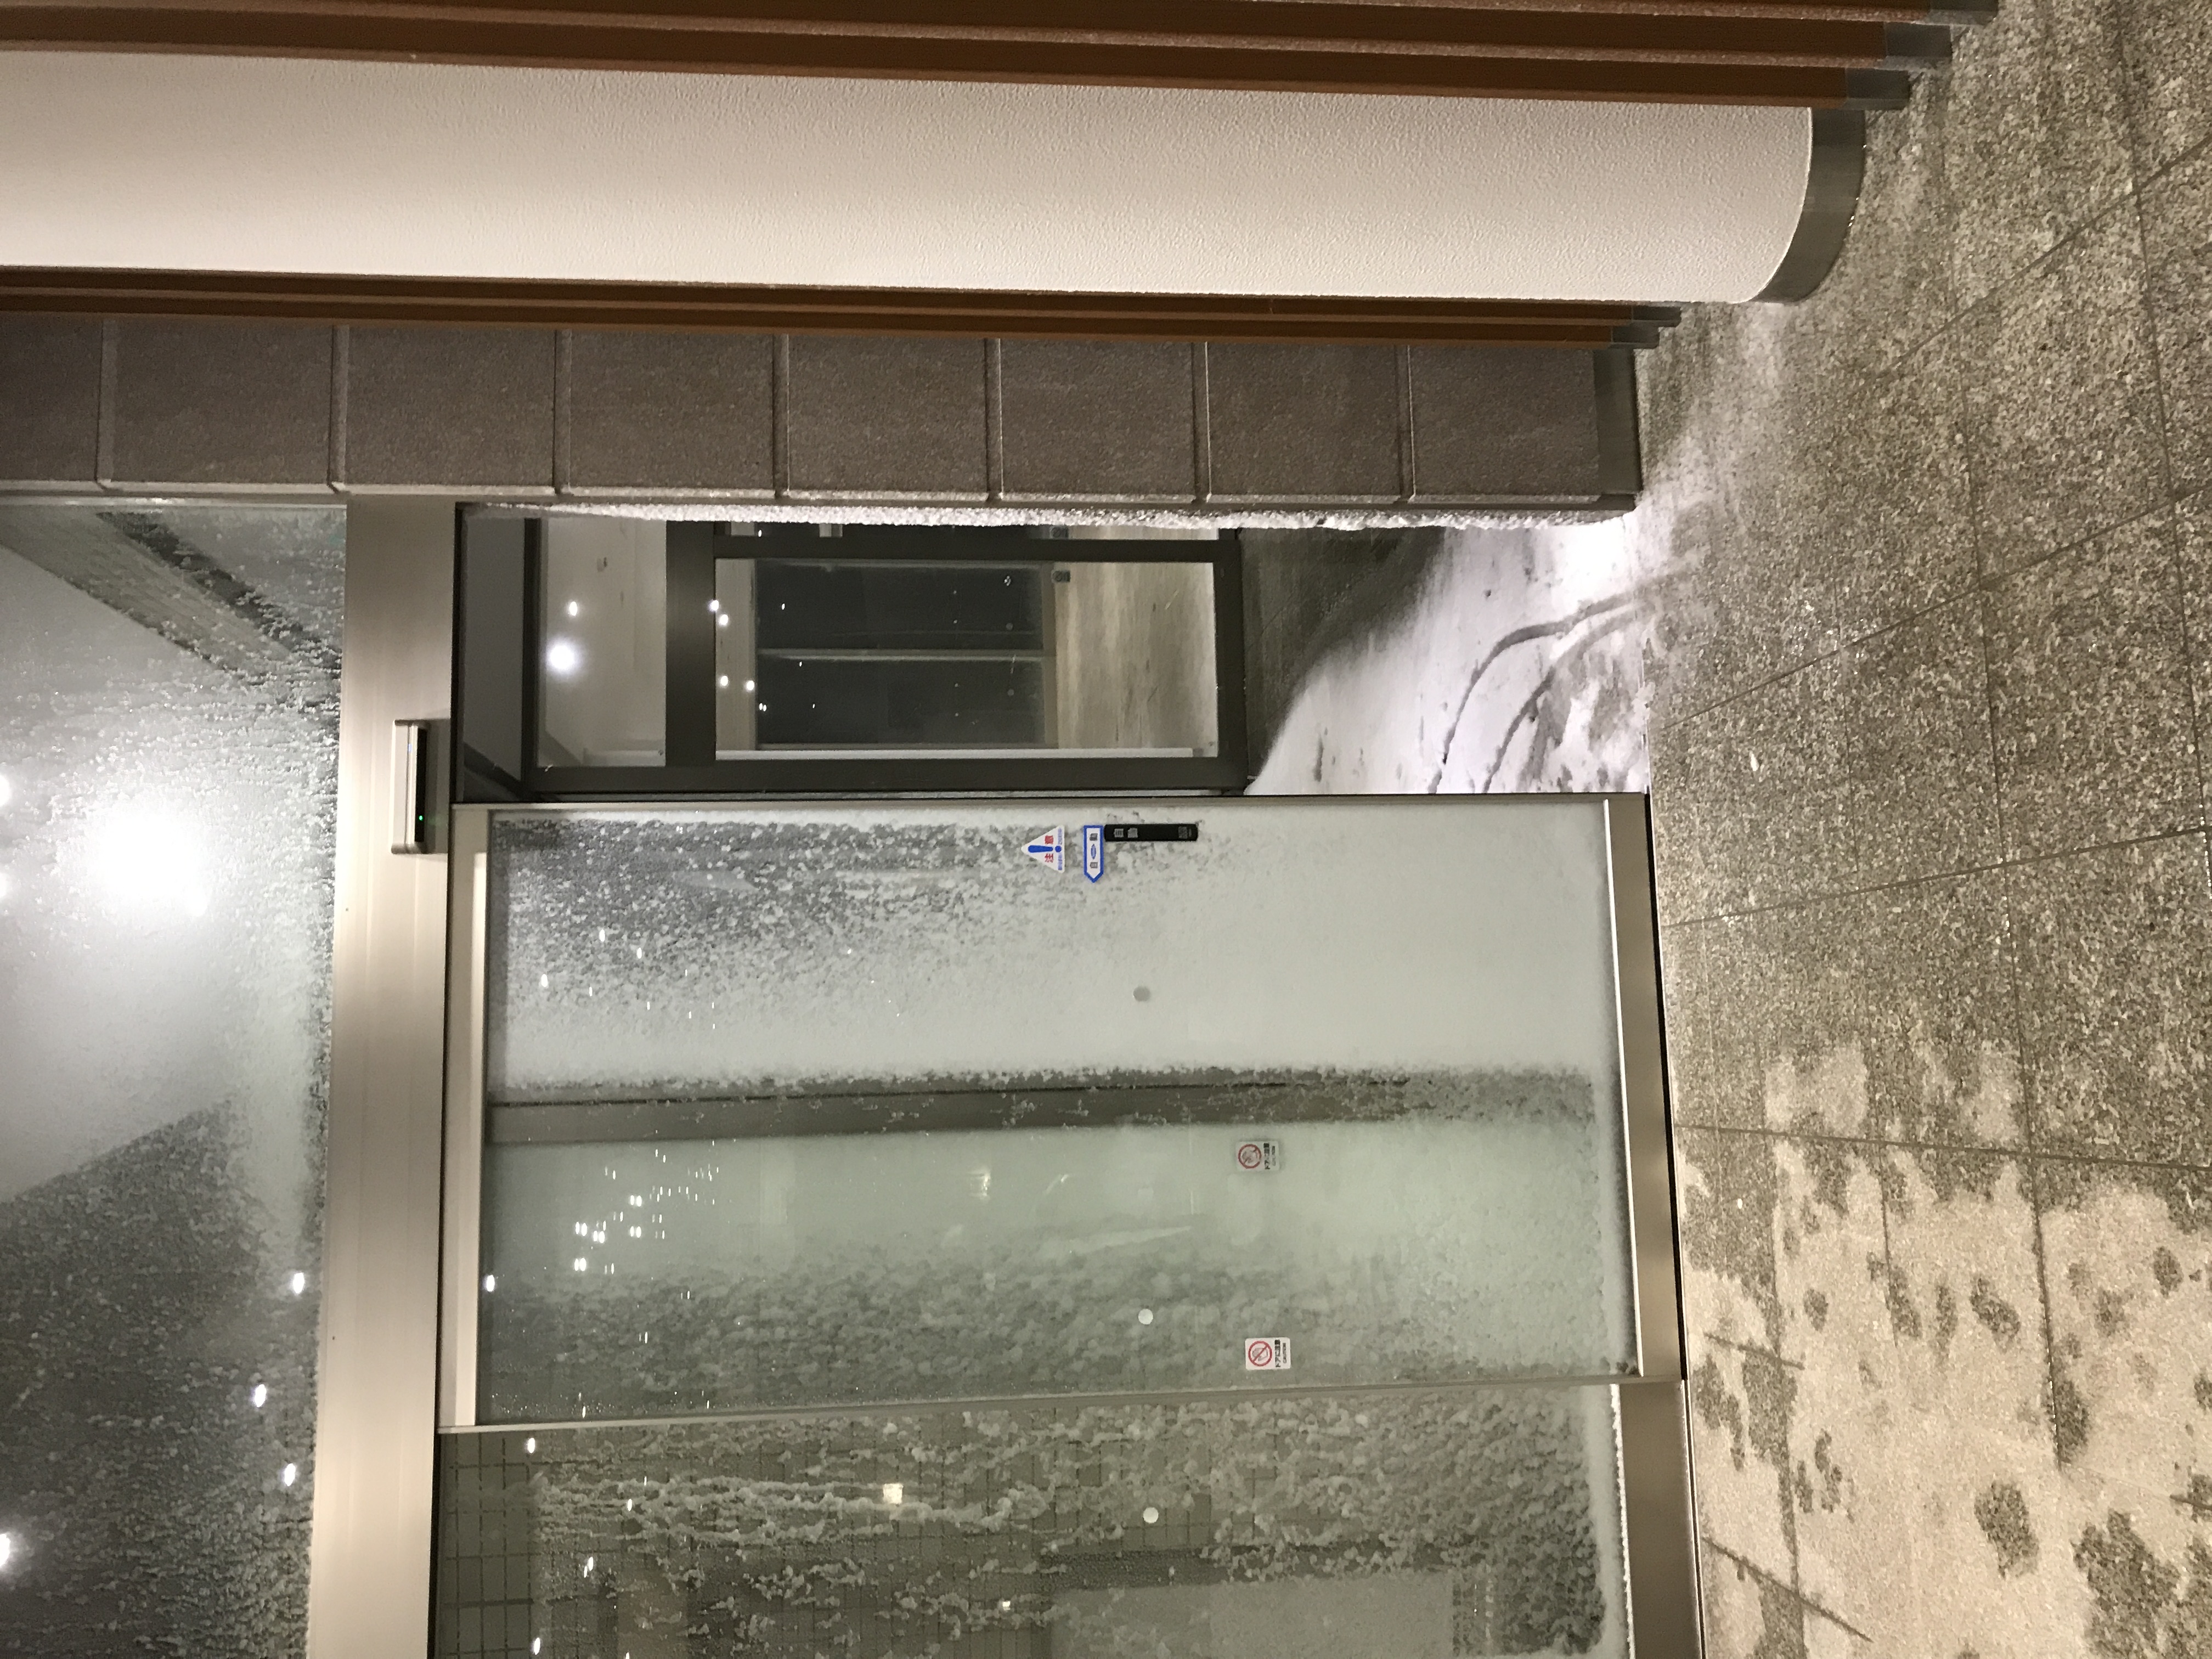 一階のフロントのエレベーター広場に雪積も...